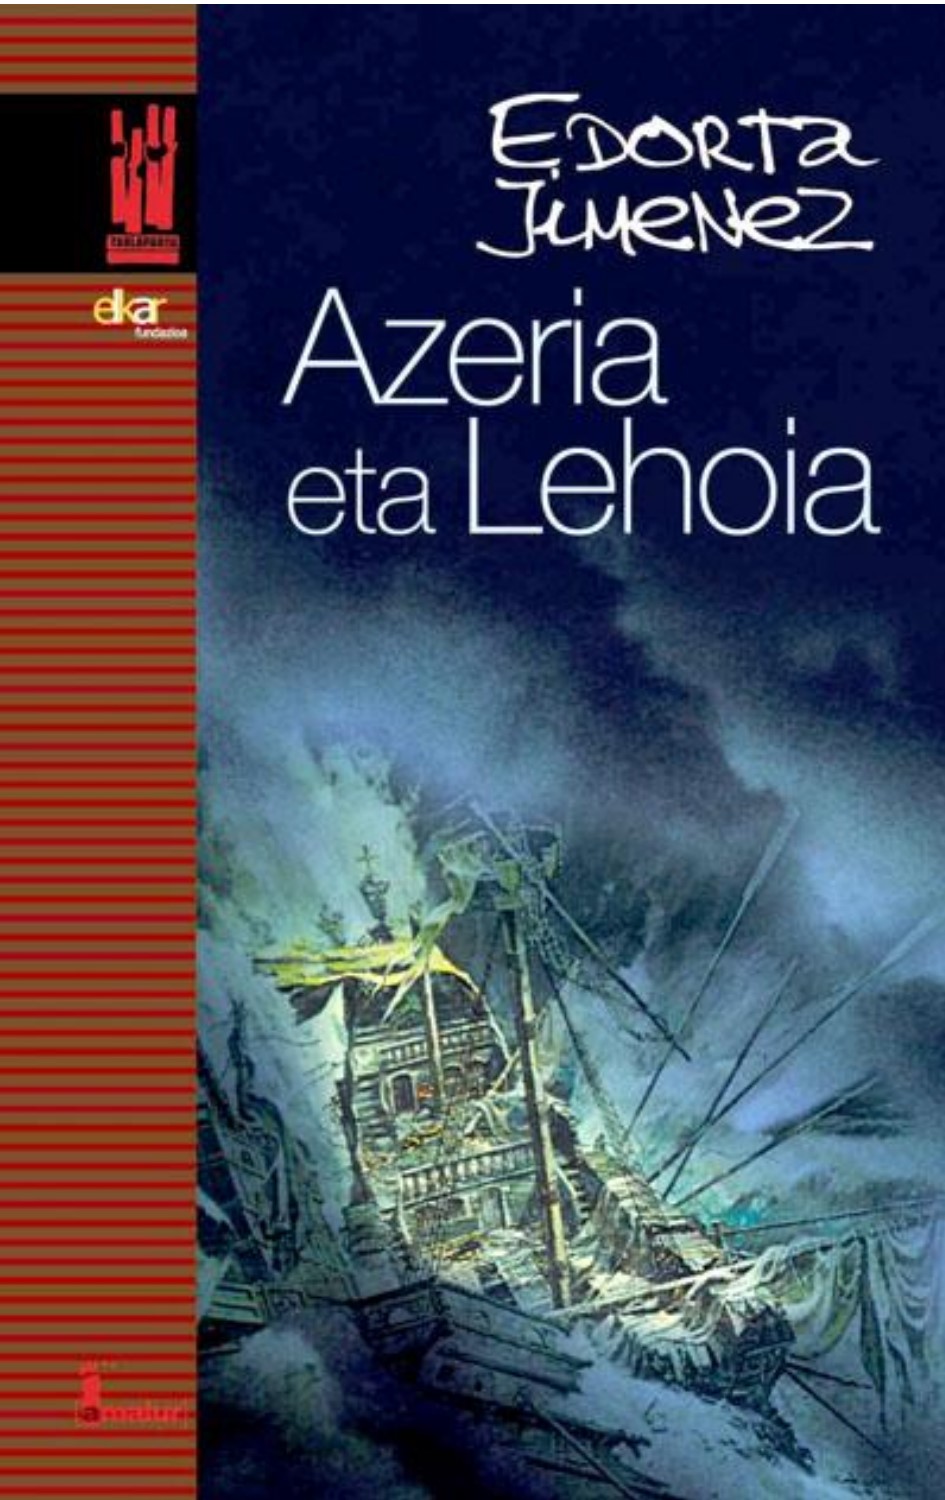 Azeria eta Lehoia (Basque language, 2007, Txalaparta)